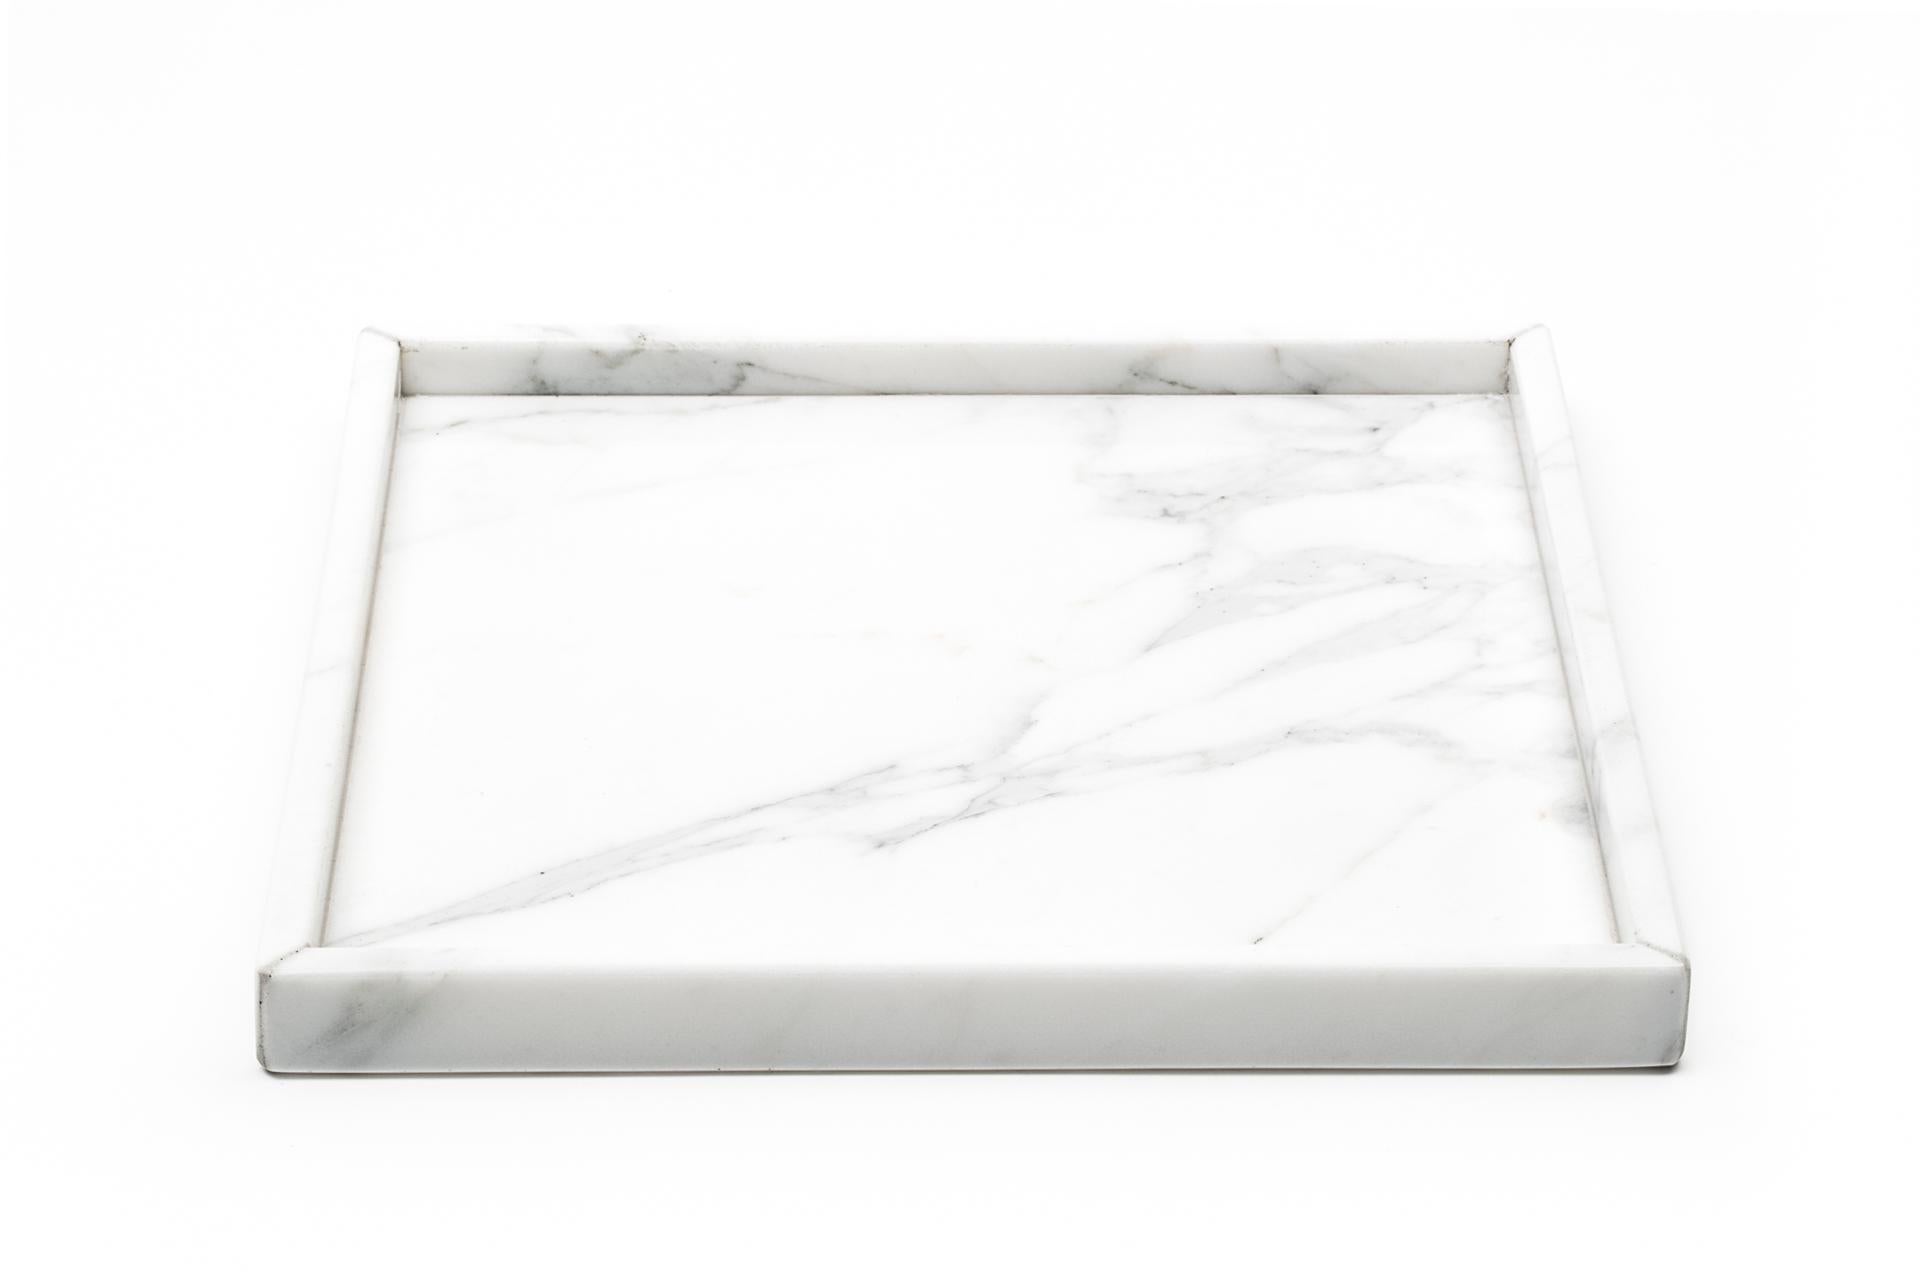 Plateau carré en marbre blanc de Carrare, idéal pour le spa, dans la salle de bain mais aussi comme centre de table ou dans l'entrée comme valet de chambre. Chaque pièce est en quelque sorte unique (chaque bloc de marbre est différent par ses veines